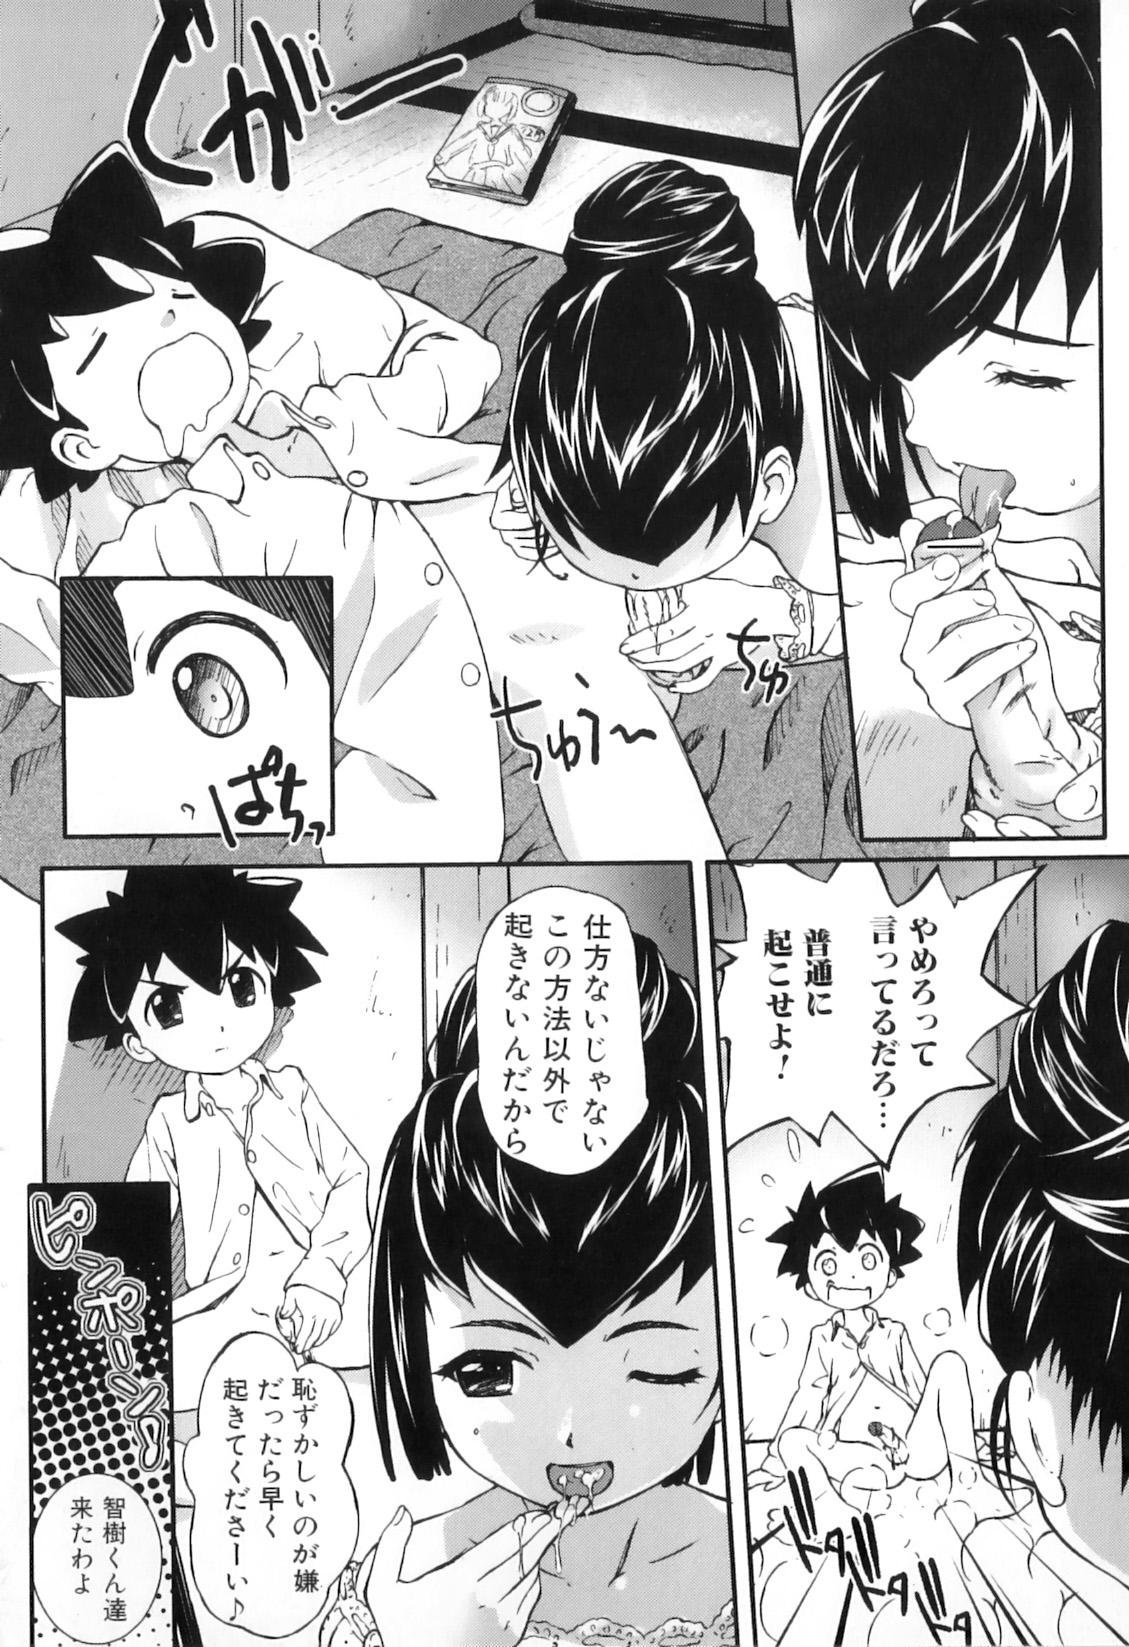 [Anthology] Boshi Chijou Kitan 2 page 40 full